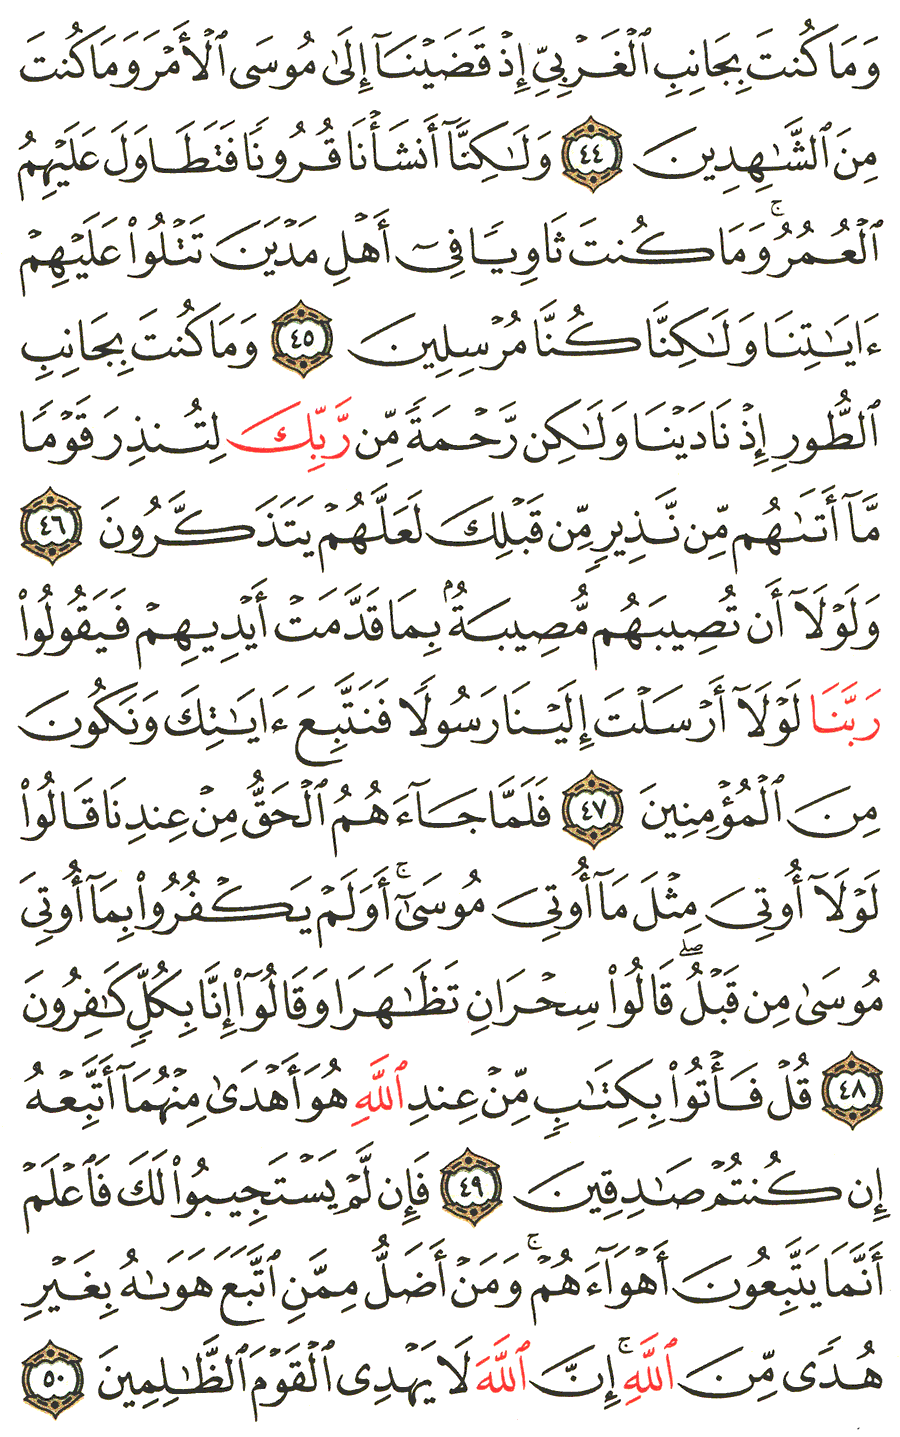 الصفحة 391 من القرآن الكريم